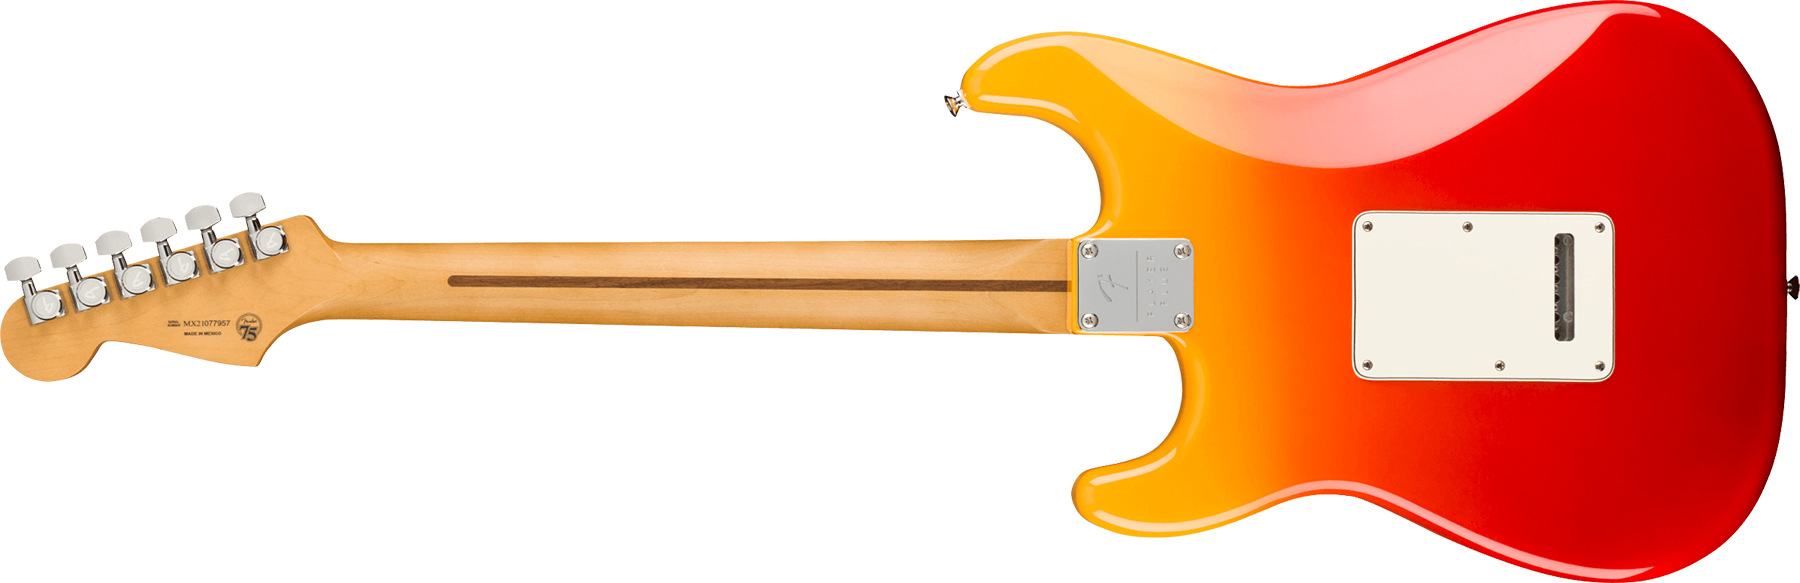 Fender Strat Player Plus Lh Gaucher Mex 3s Trem Pf - Tequila Sunrise - Guitare Électrique Gaucher - Variation 1